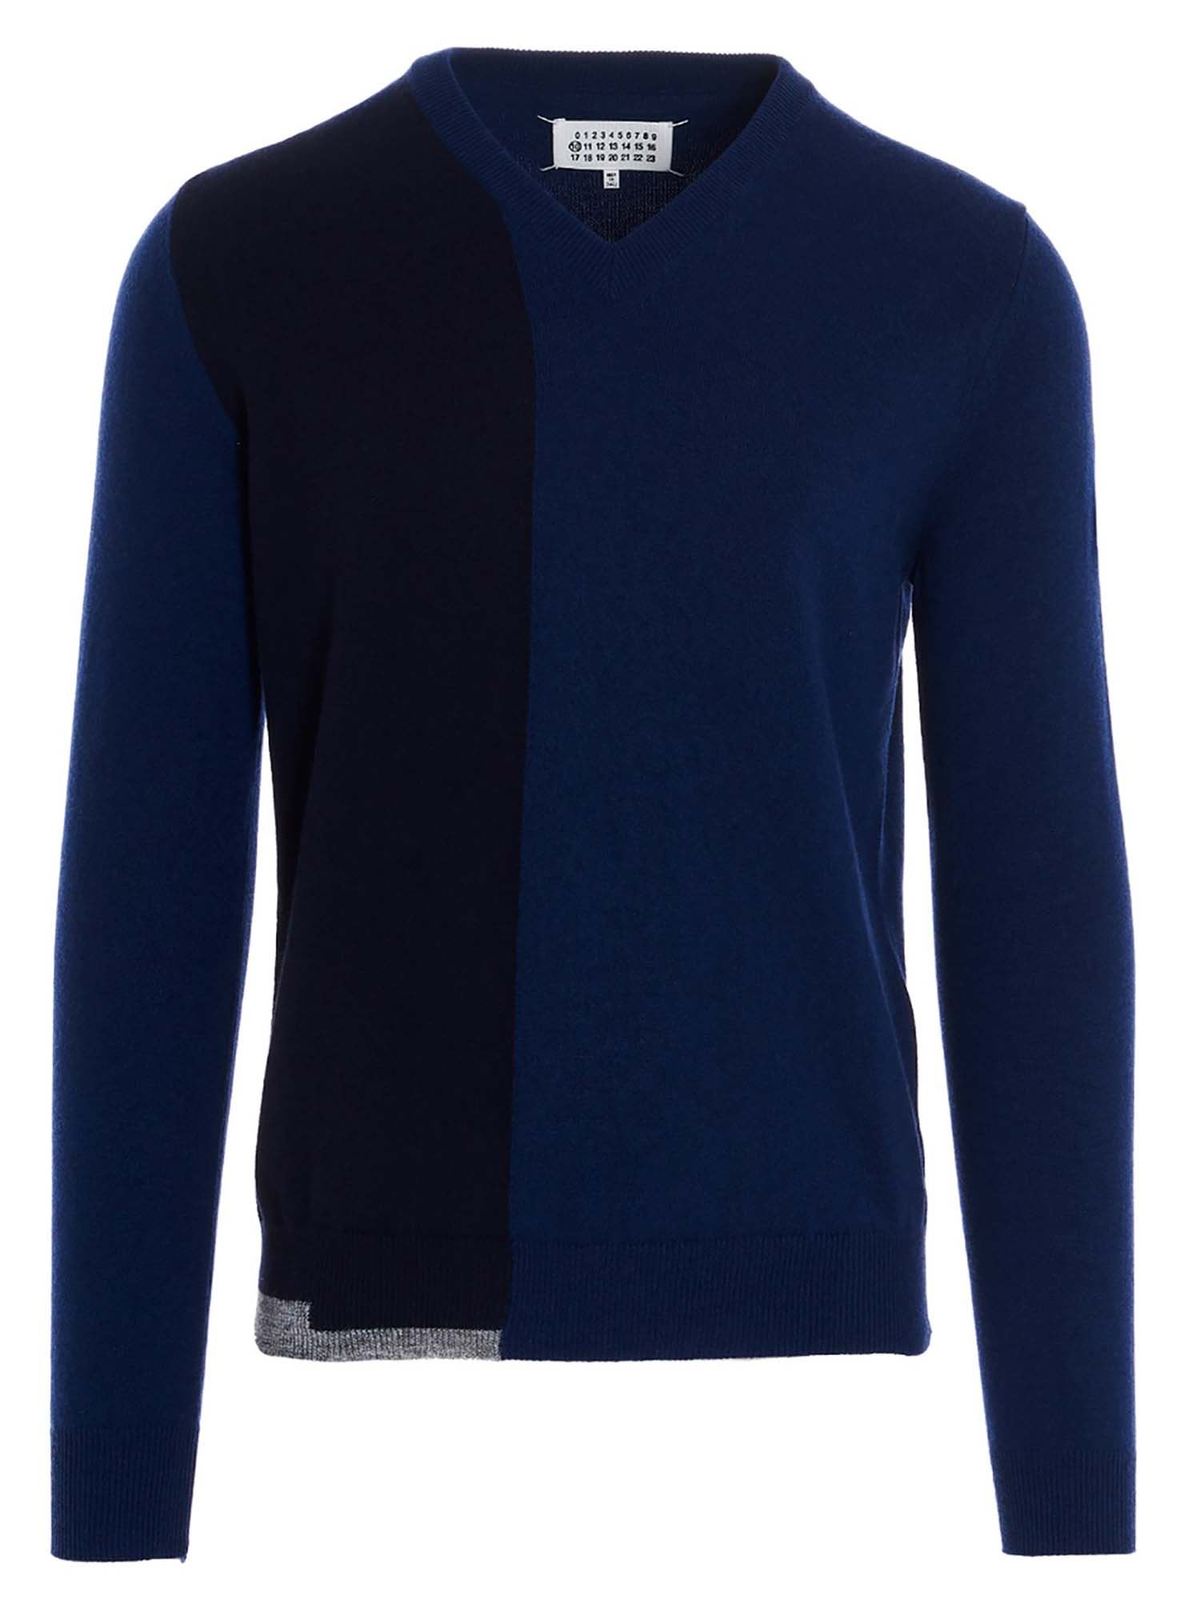 V necks Maison Margiela - V-neck sweater in blue and black ...